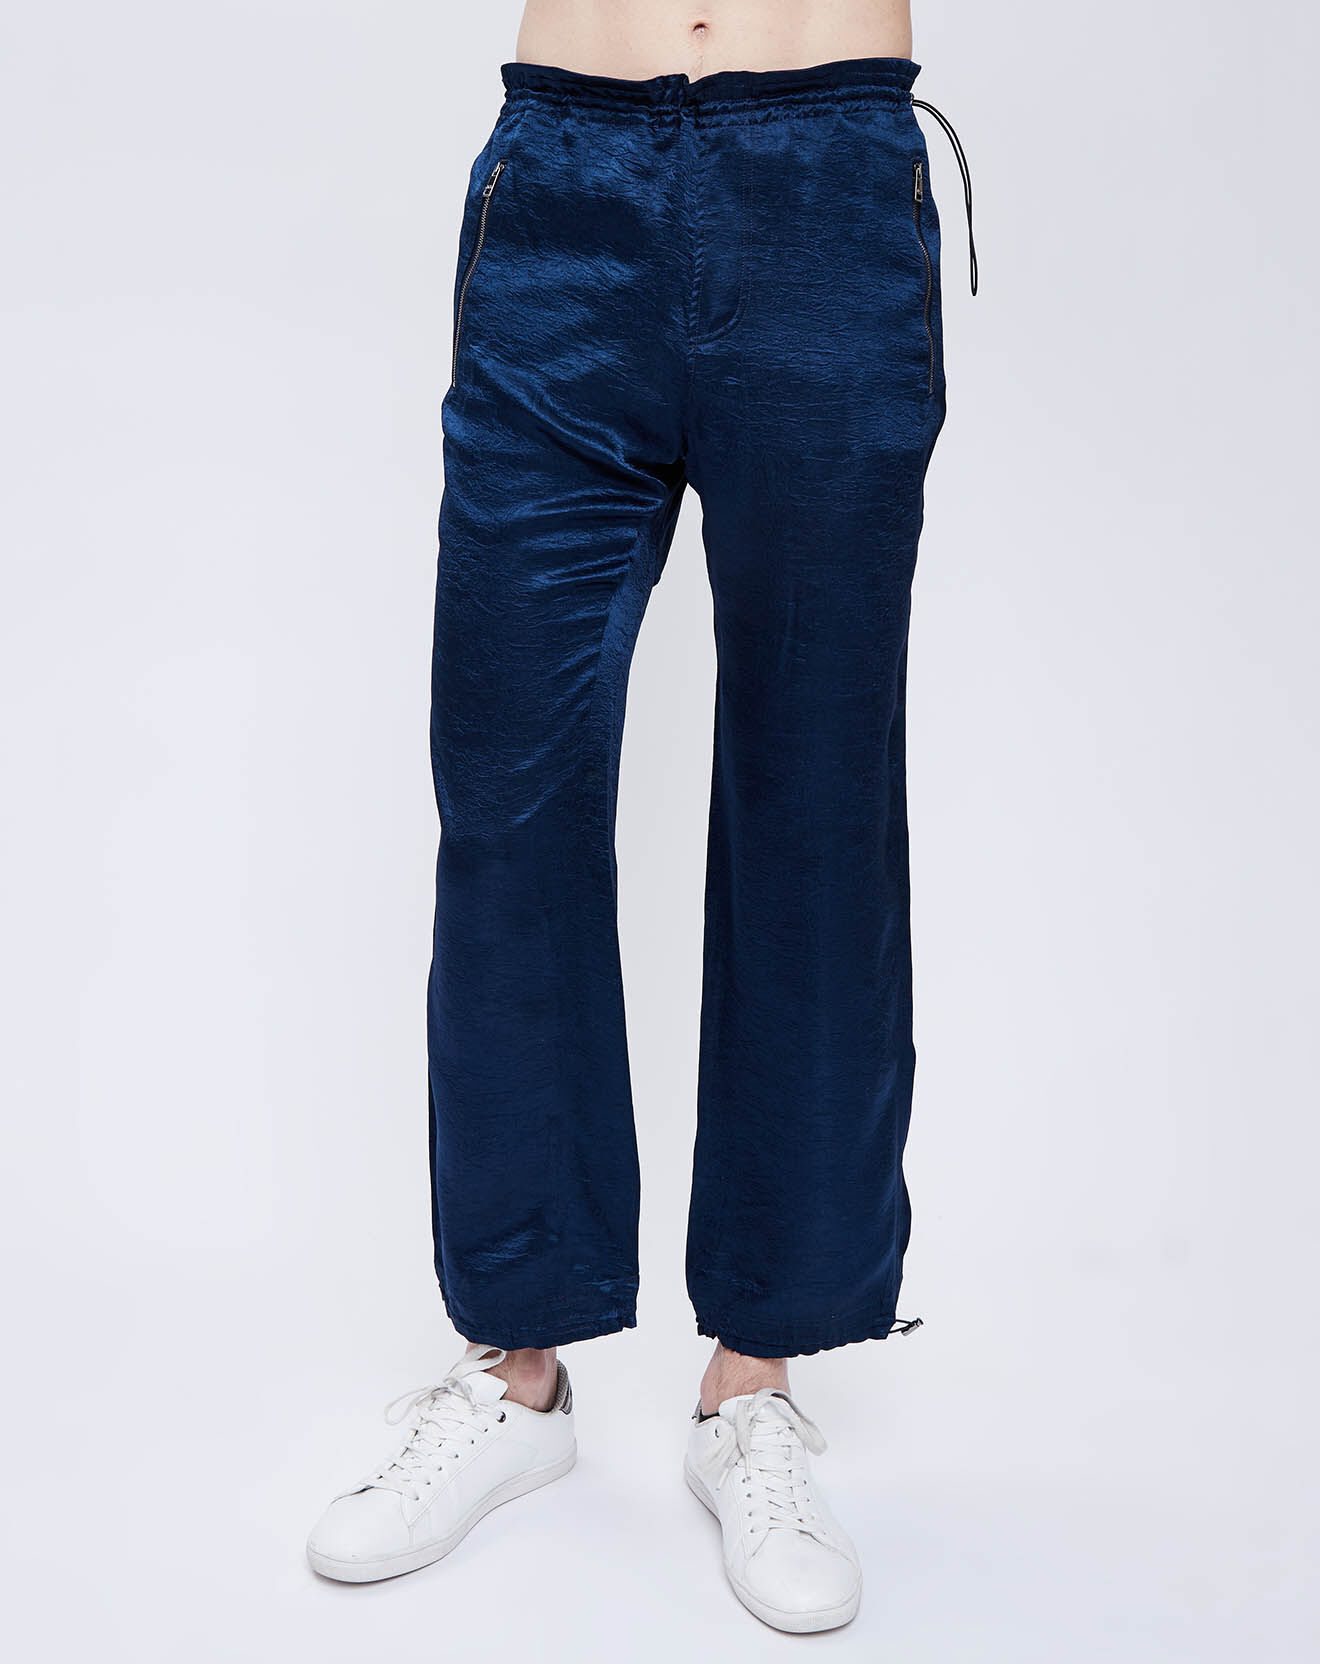 Pantalon taille élastique bleu marine